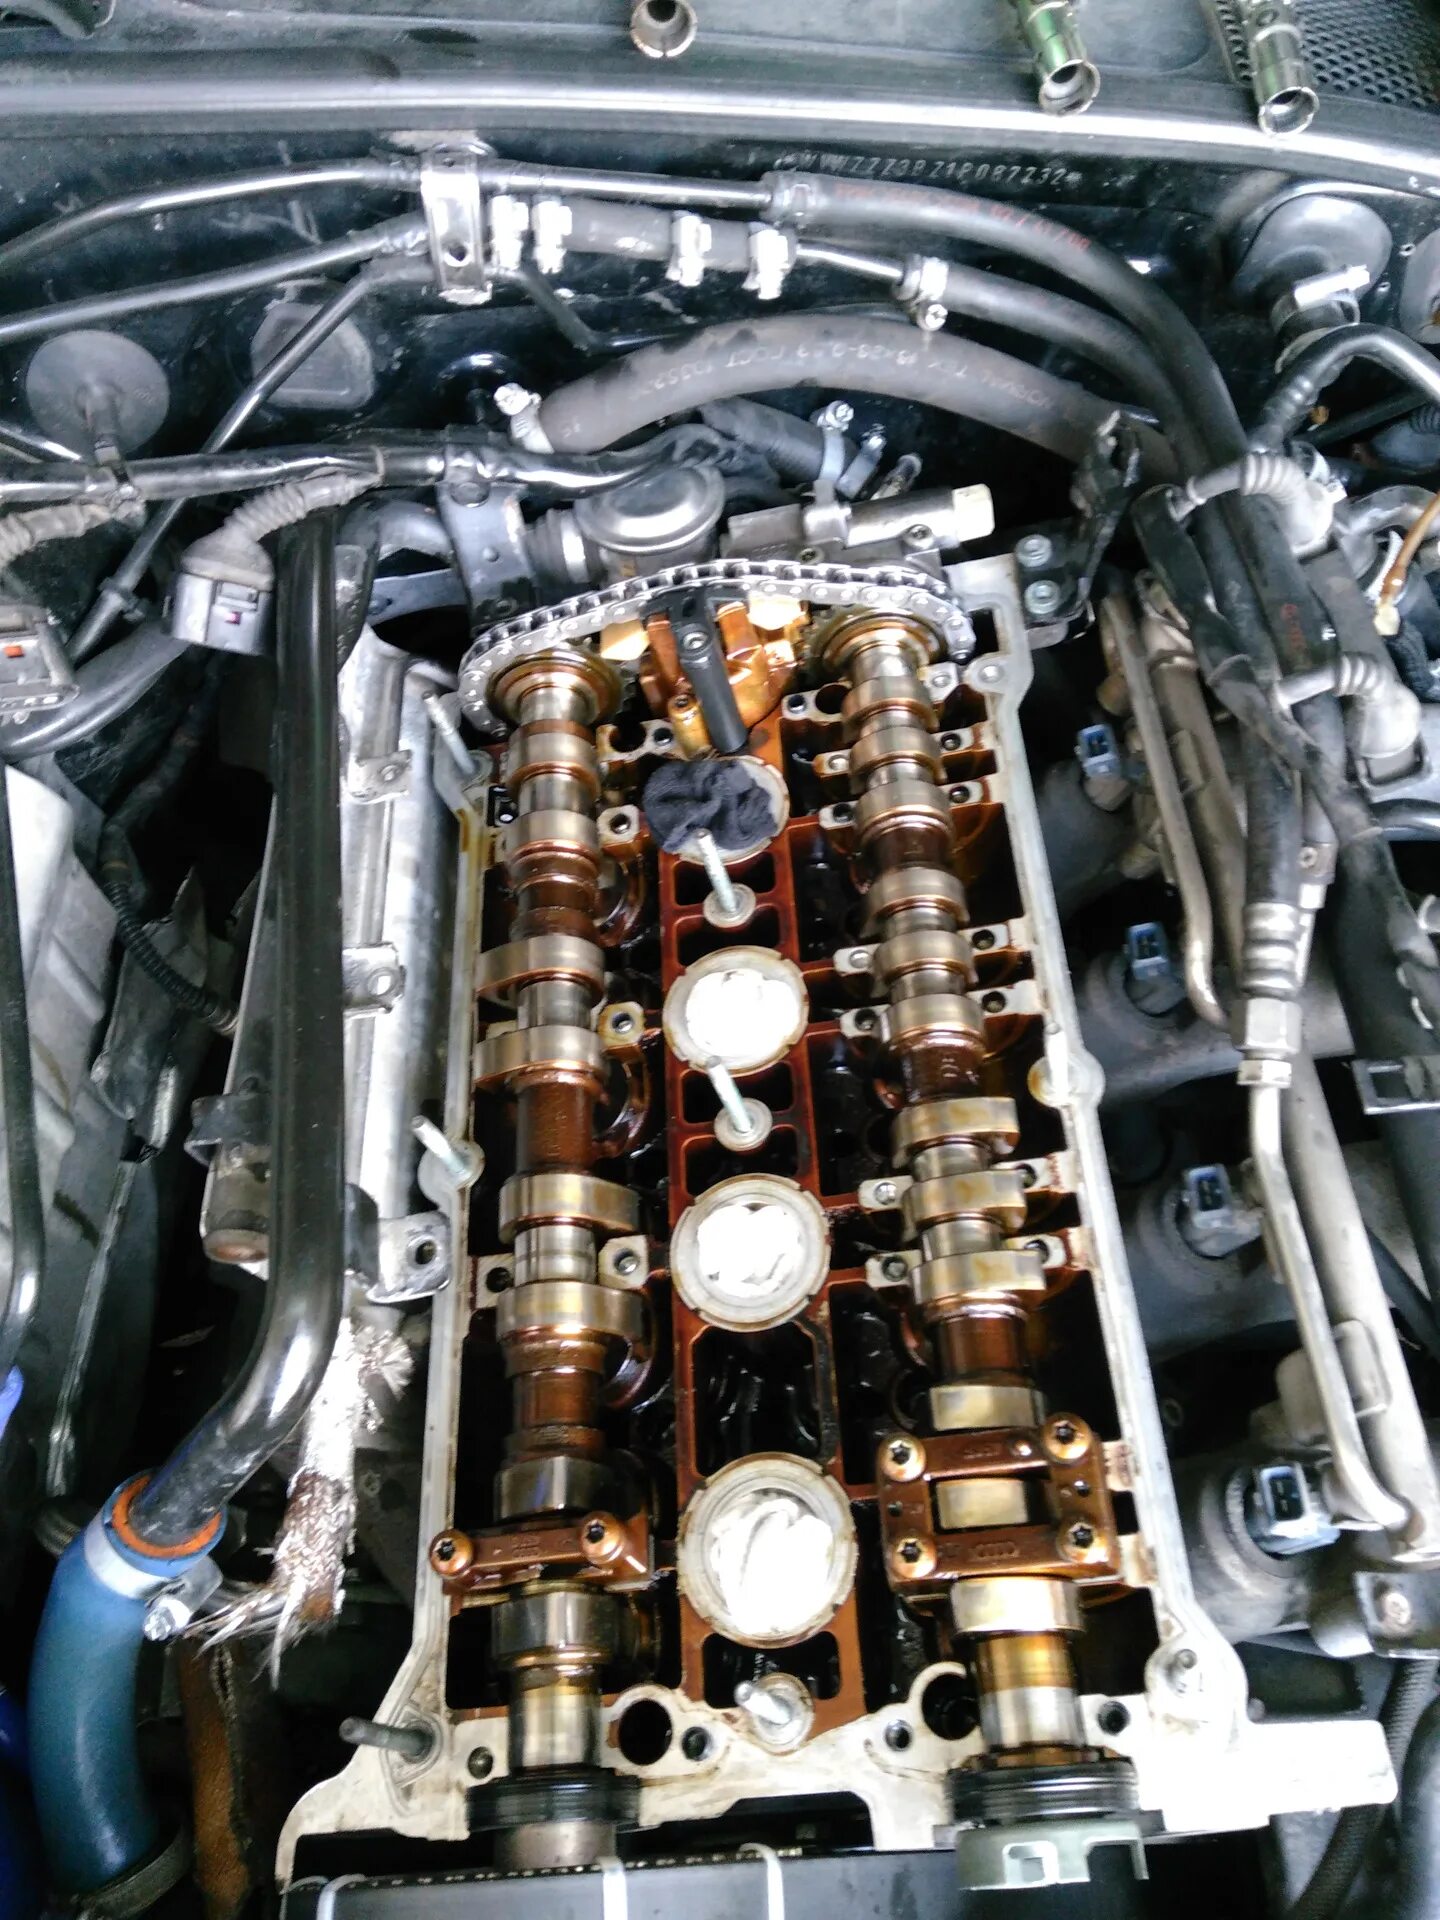 1.8 170 л с. Мотор AWT 1.8 турбо. Volkswagen Passat b5 +1.8 турбо AWT 2002г электро магнитный клапан. Двигатель AWT 1.8 турбо клапанов. Гидрокомпенсаторов 1.8t Audi.